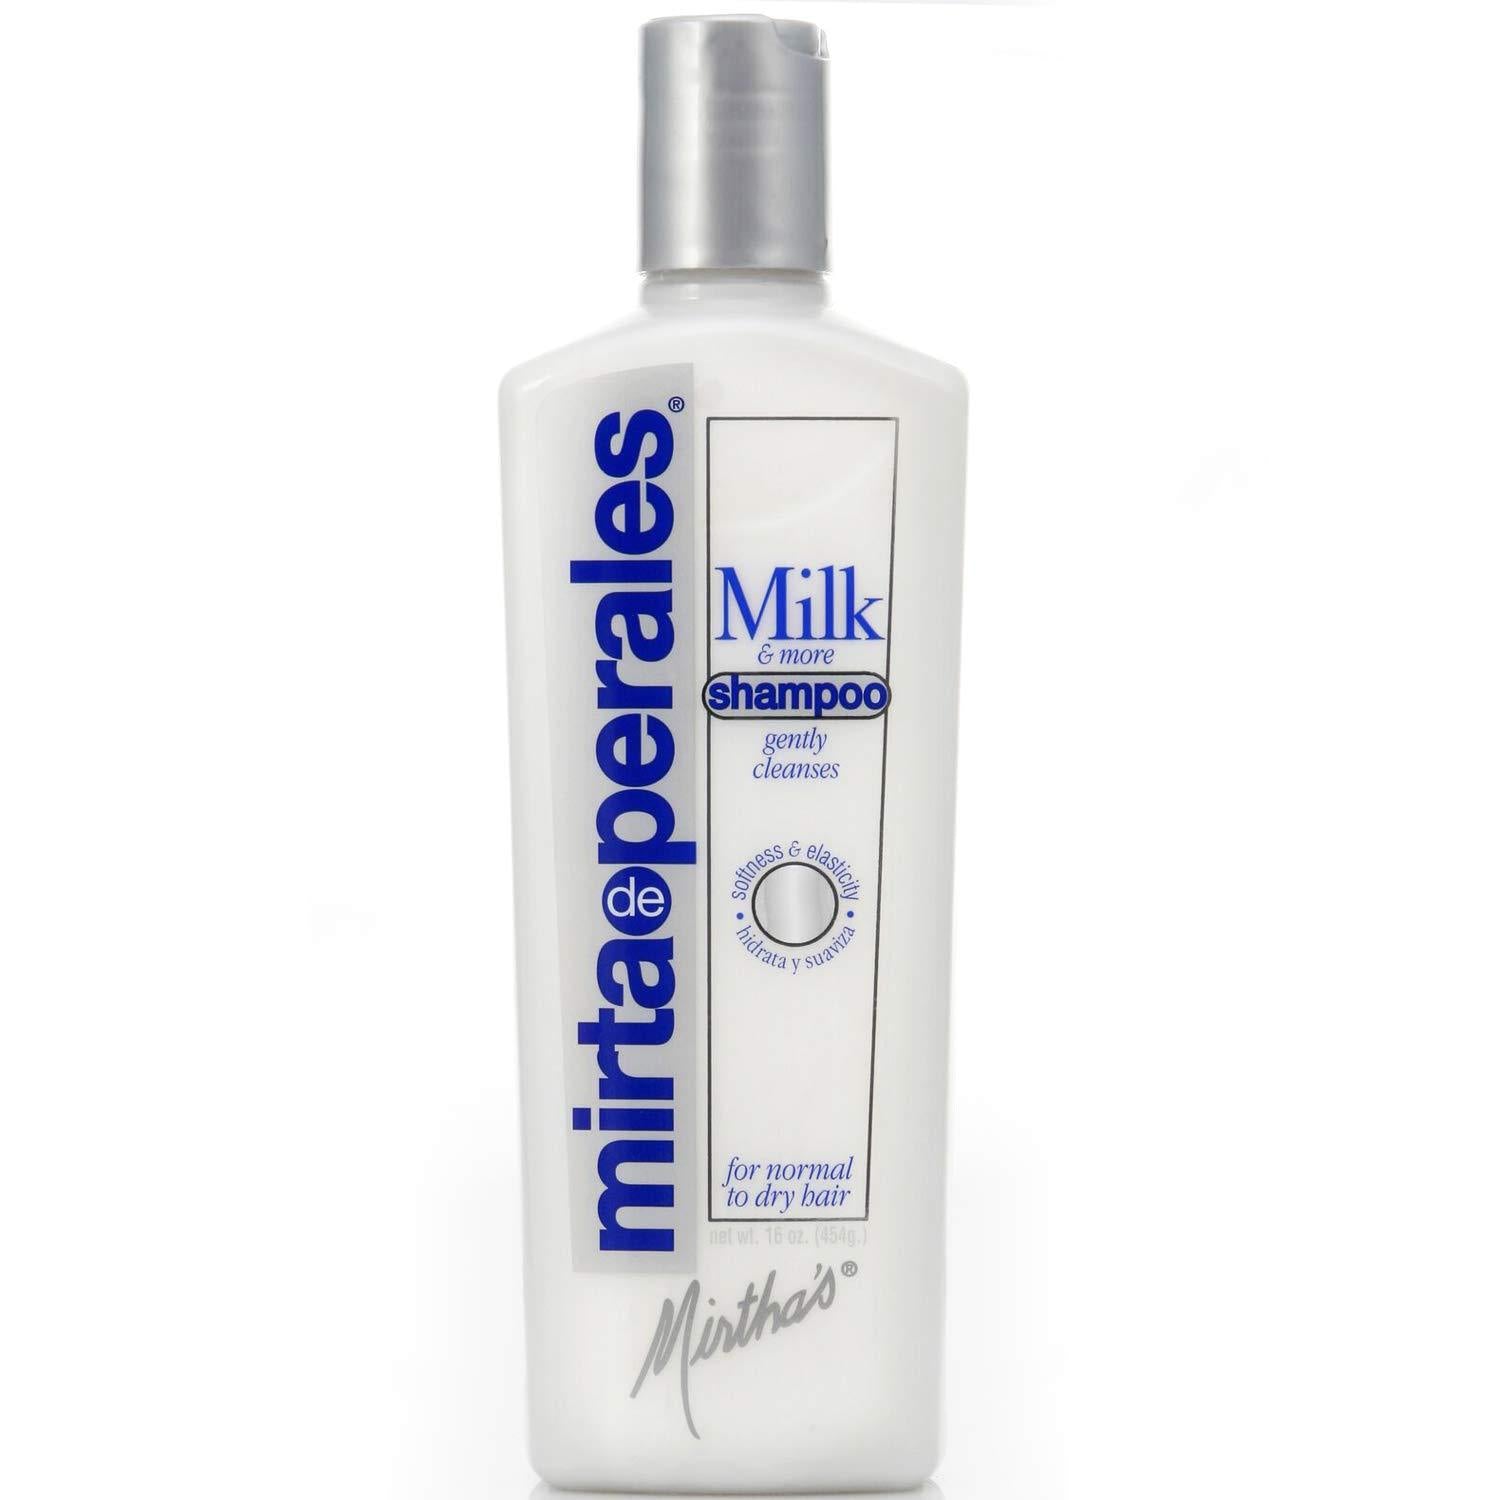 Mirta De Perales Milk Shampoo 8Oz